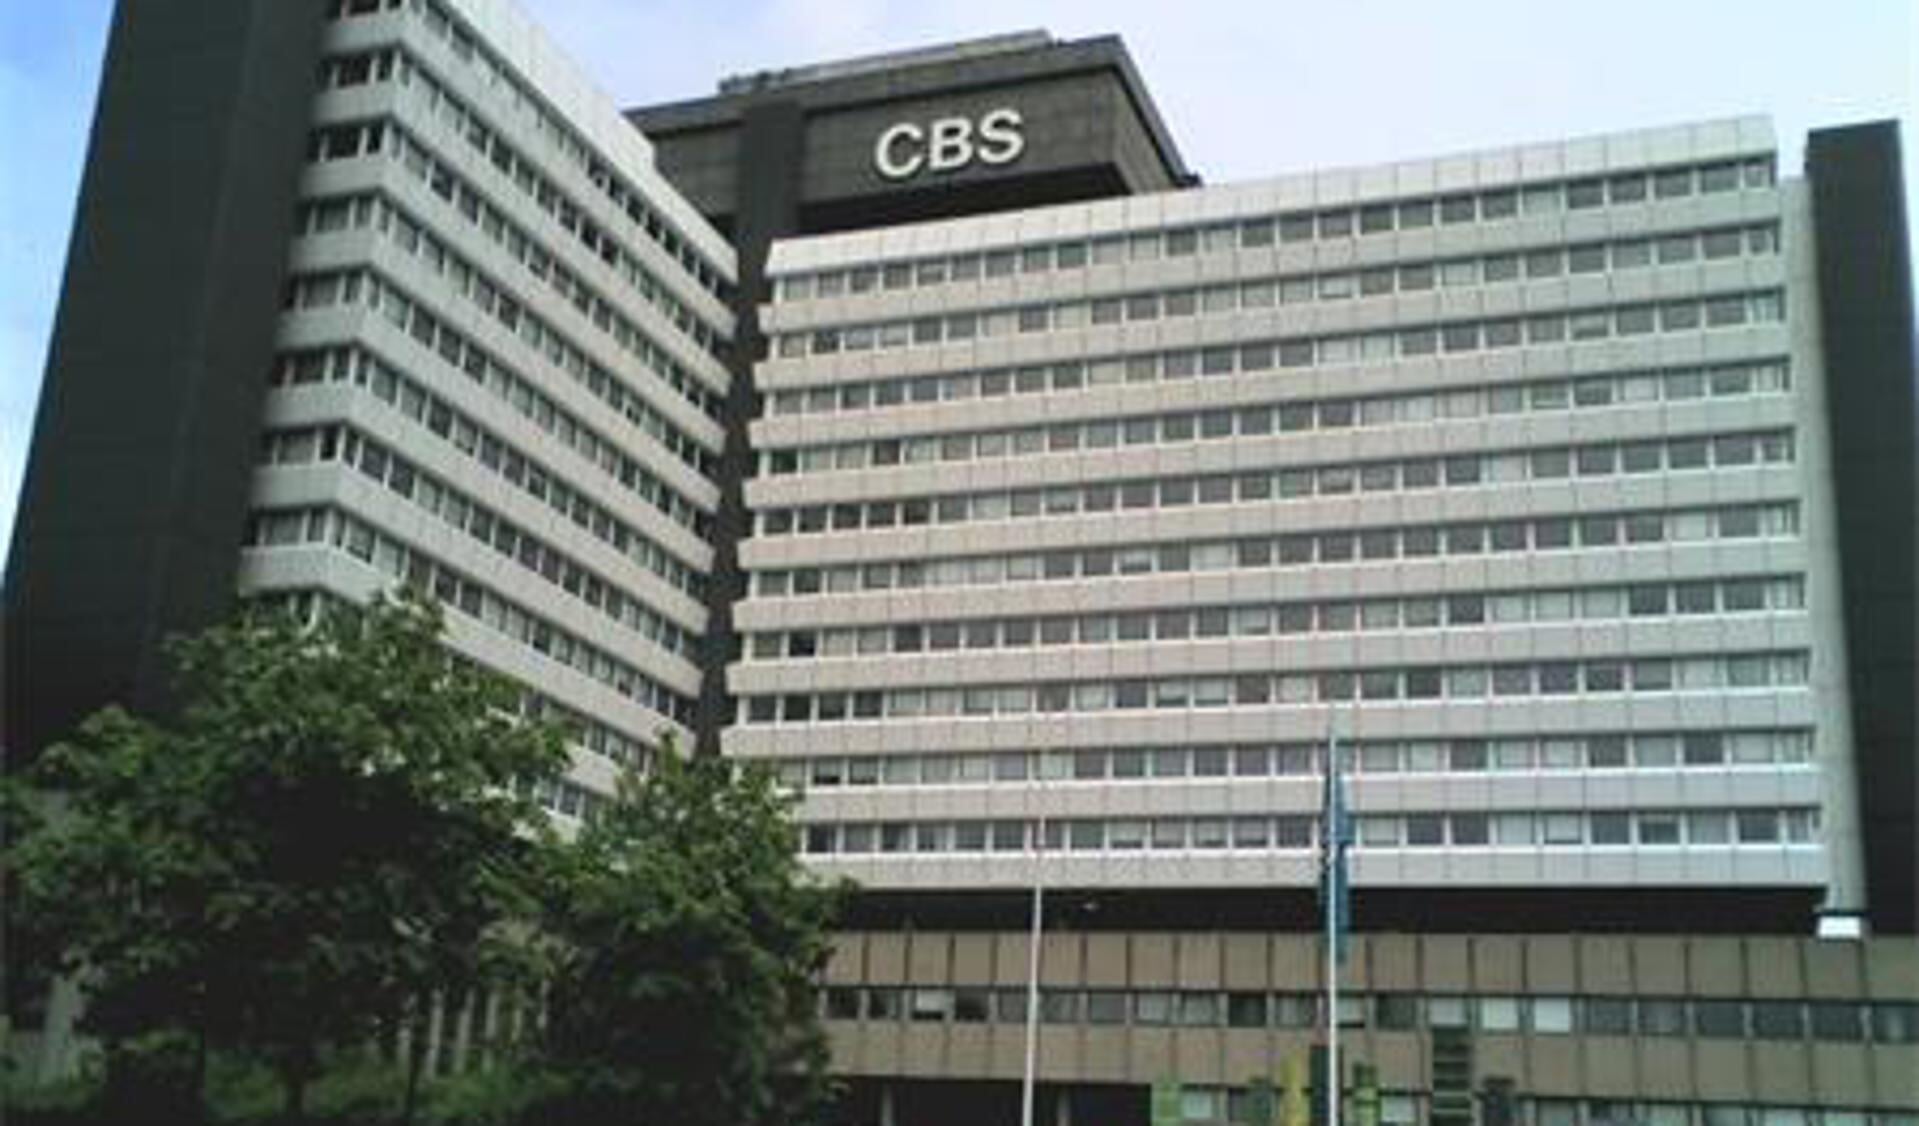 De ontruiming van het CBS houdt de gemoederen bezig